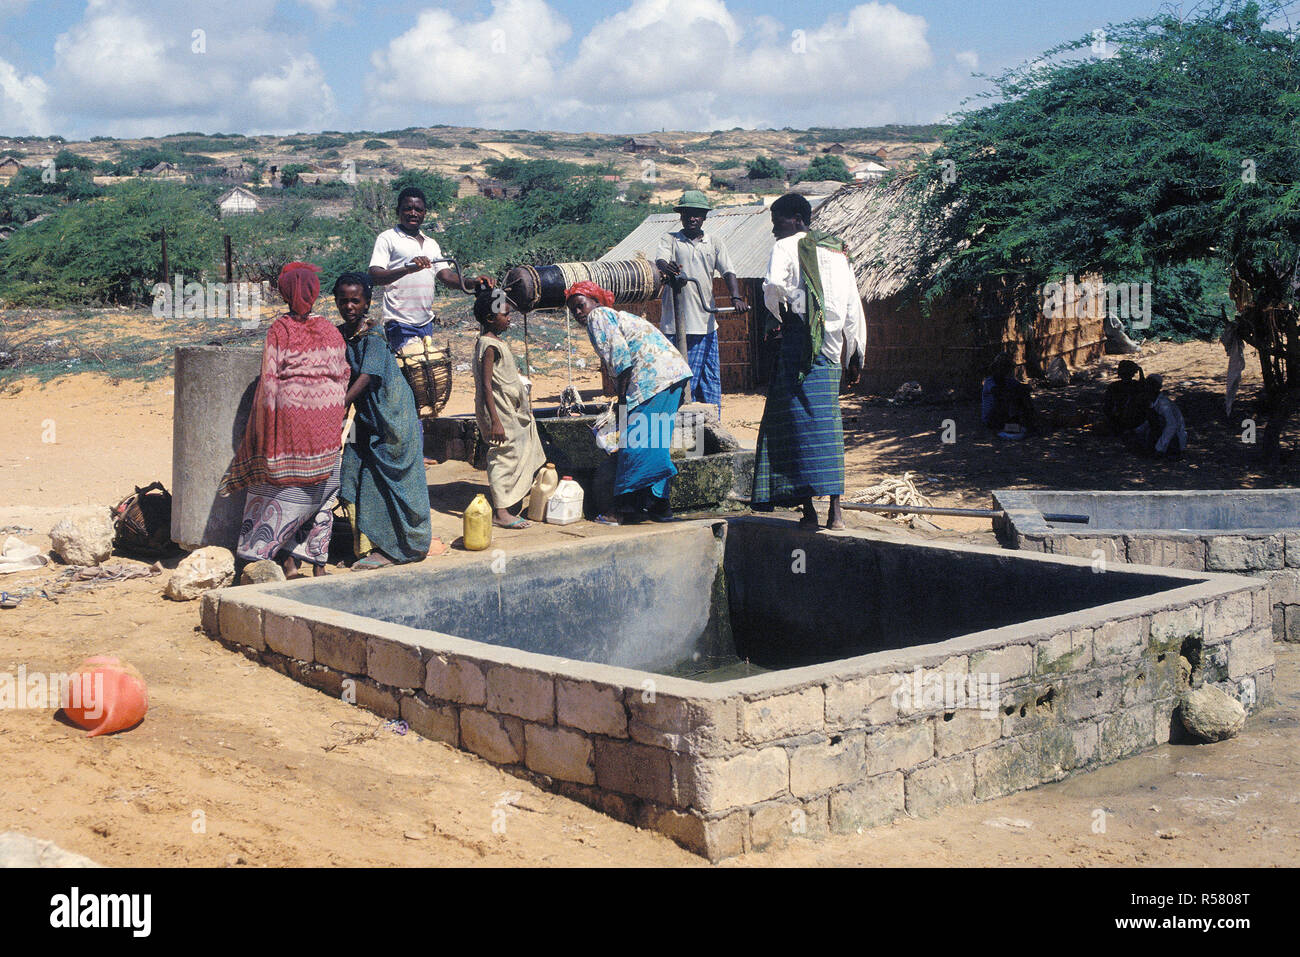 1993 - somaliens se rassemblent pour tirer d'un puits dans le village. L'armée marocaine maintient une base située à Marka (Merca) Somalie Banque D'Images